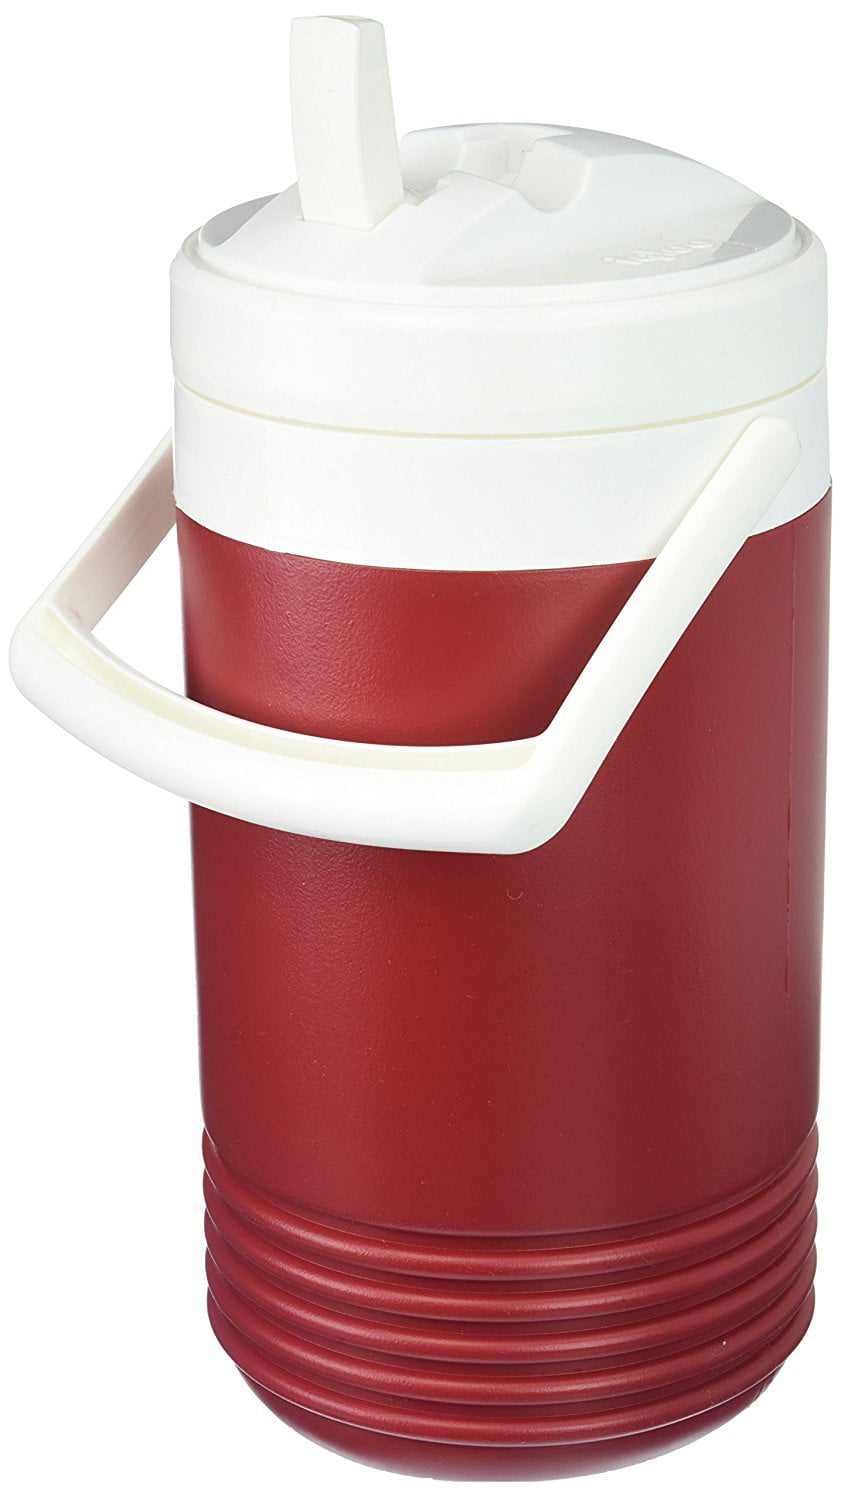 Igloo Legend Beverage Cooler Red, 2-Gallon 